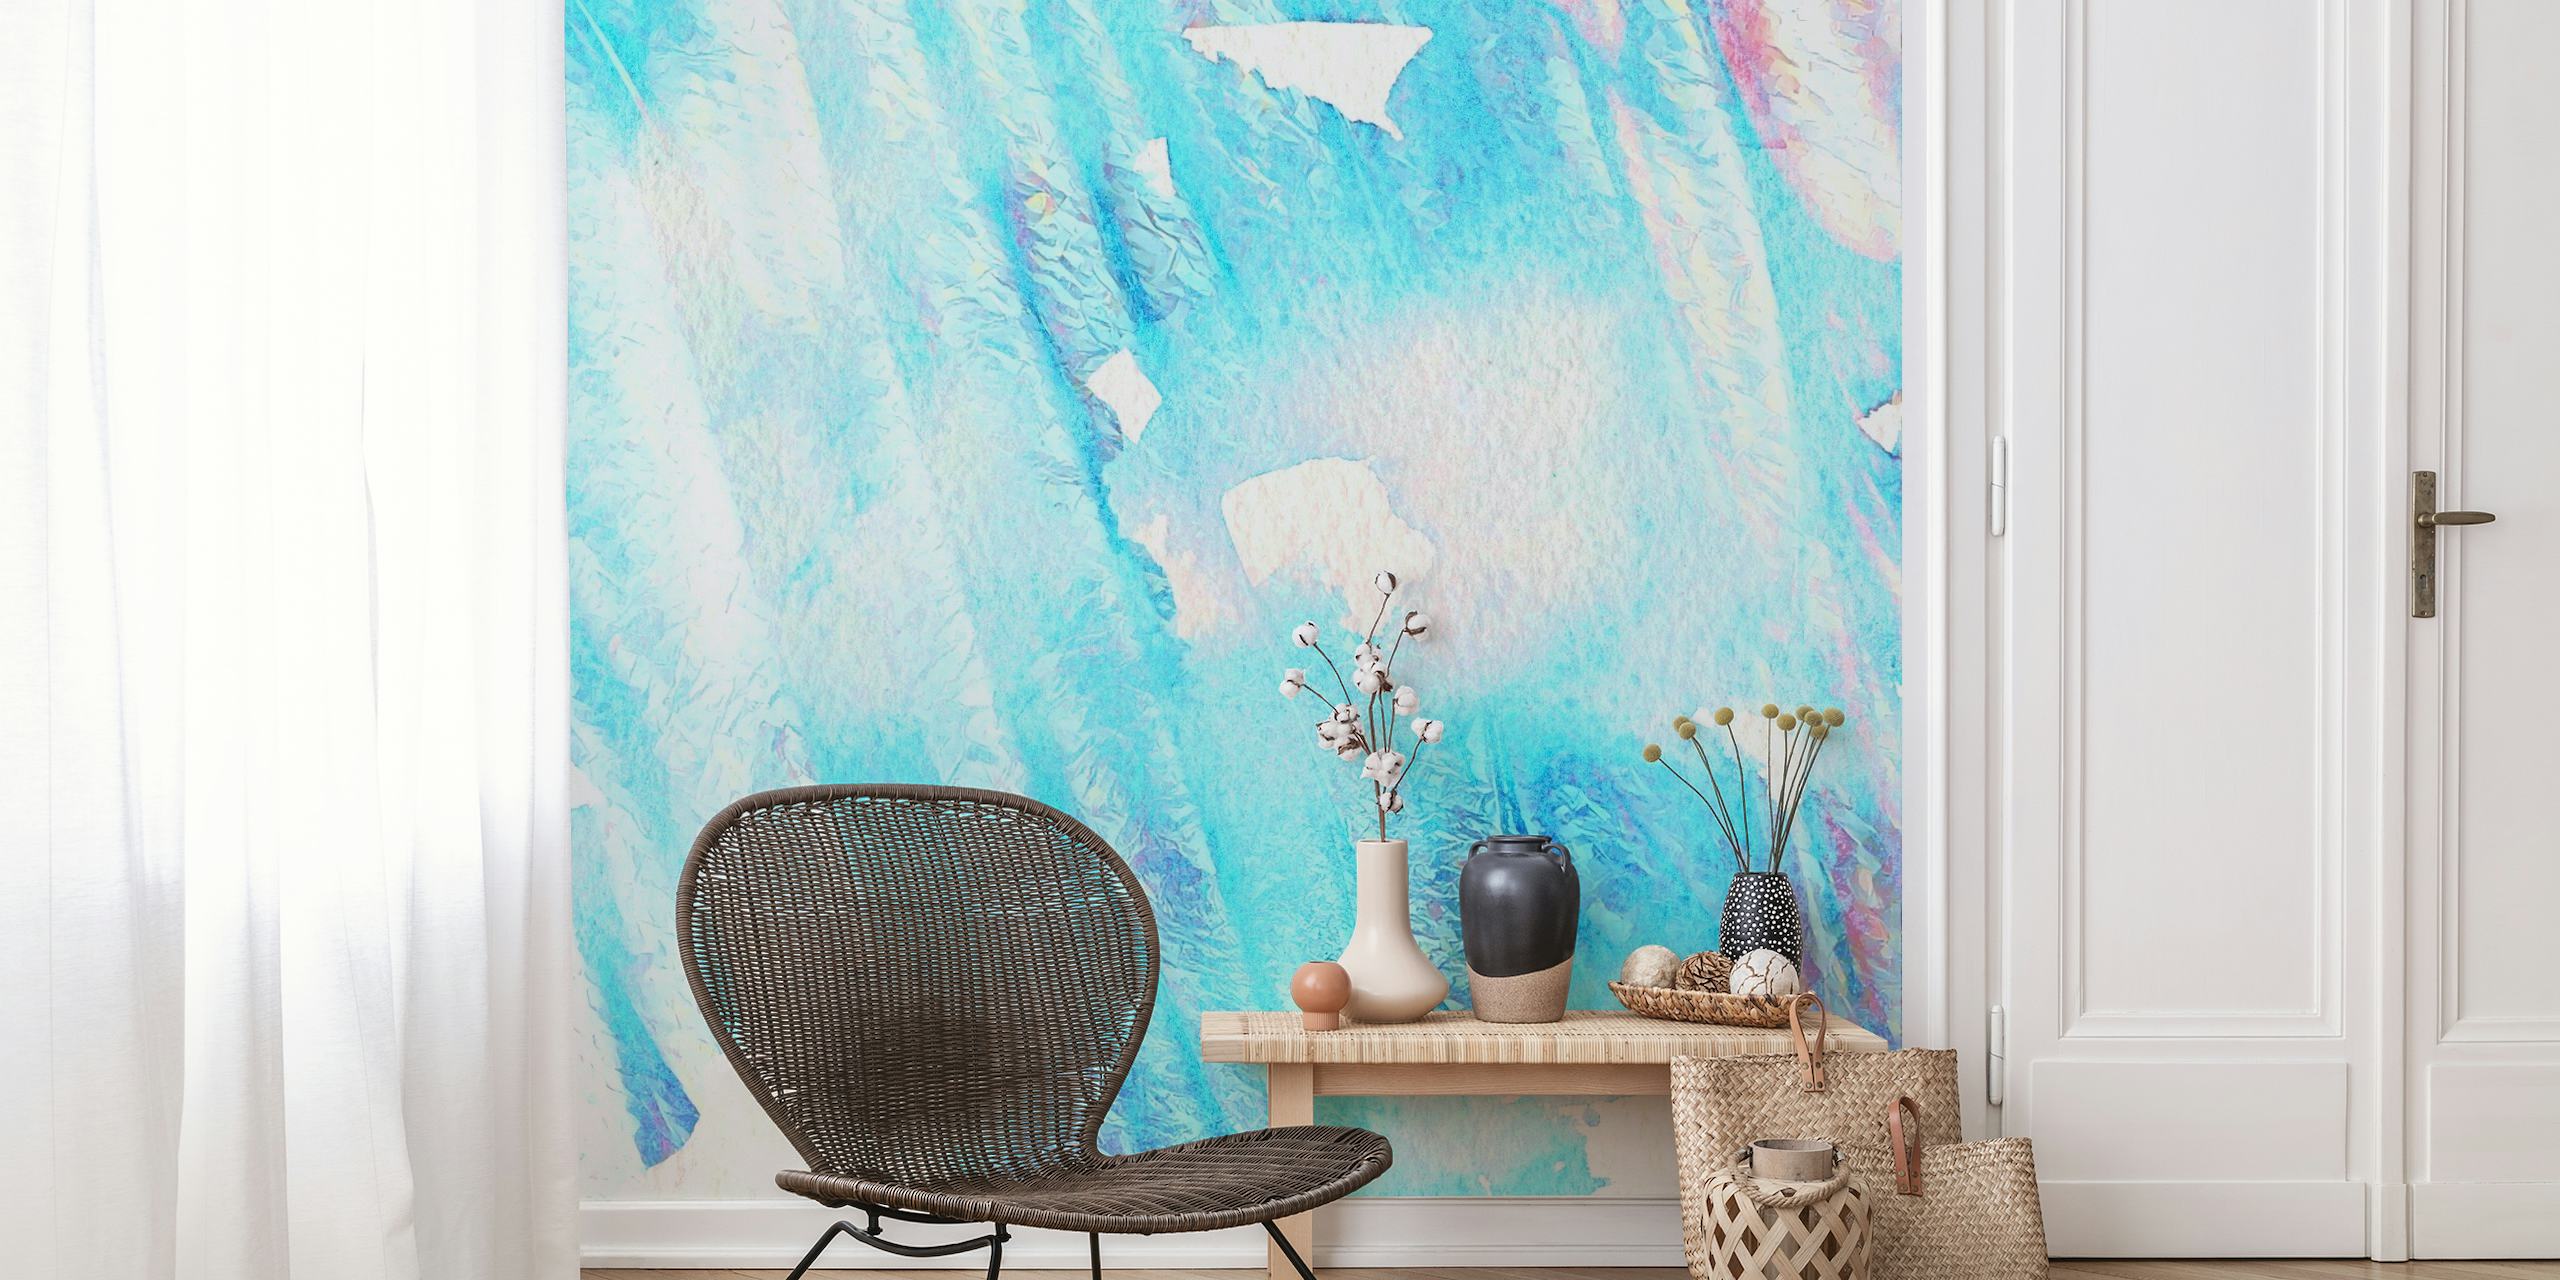 Lichtblauwgroen en witte aquarel textuur muurschildering